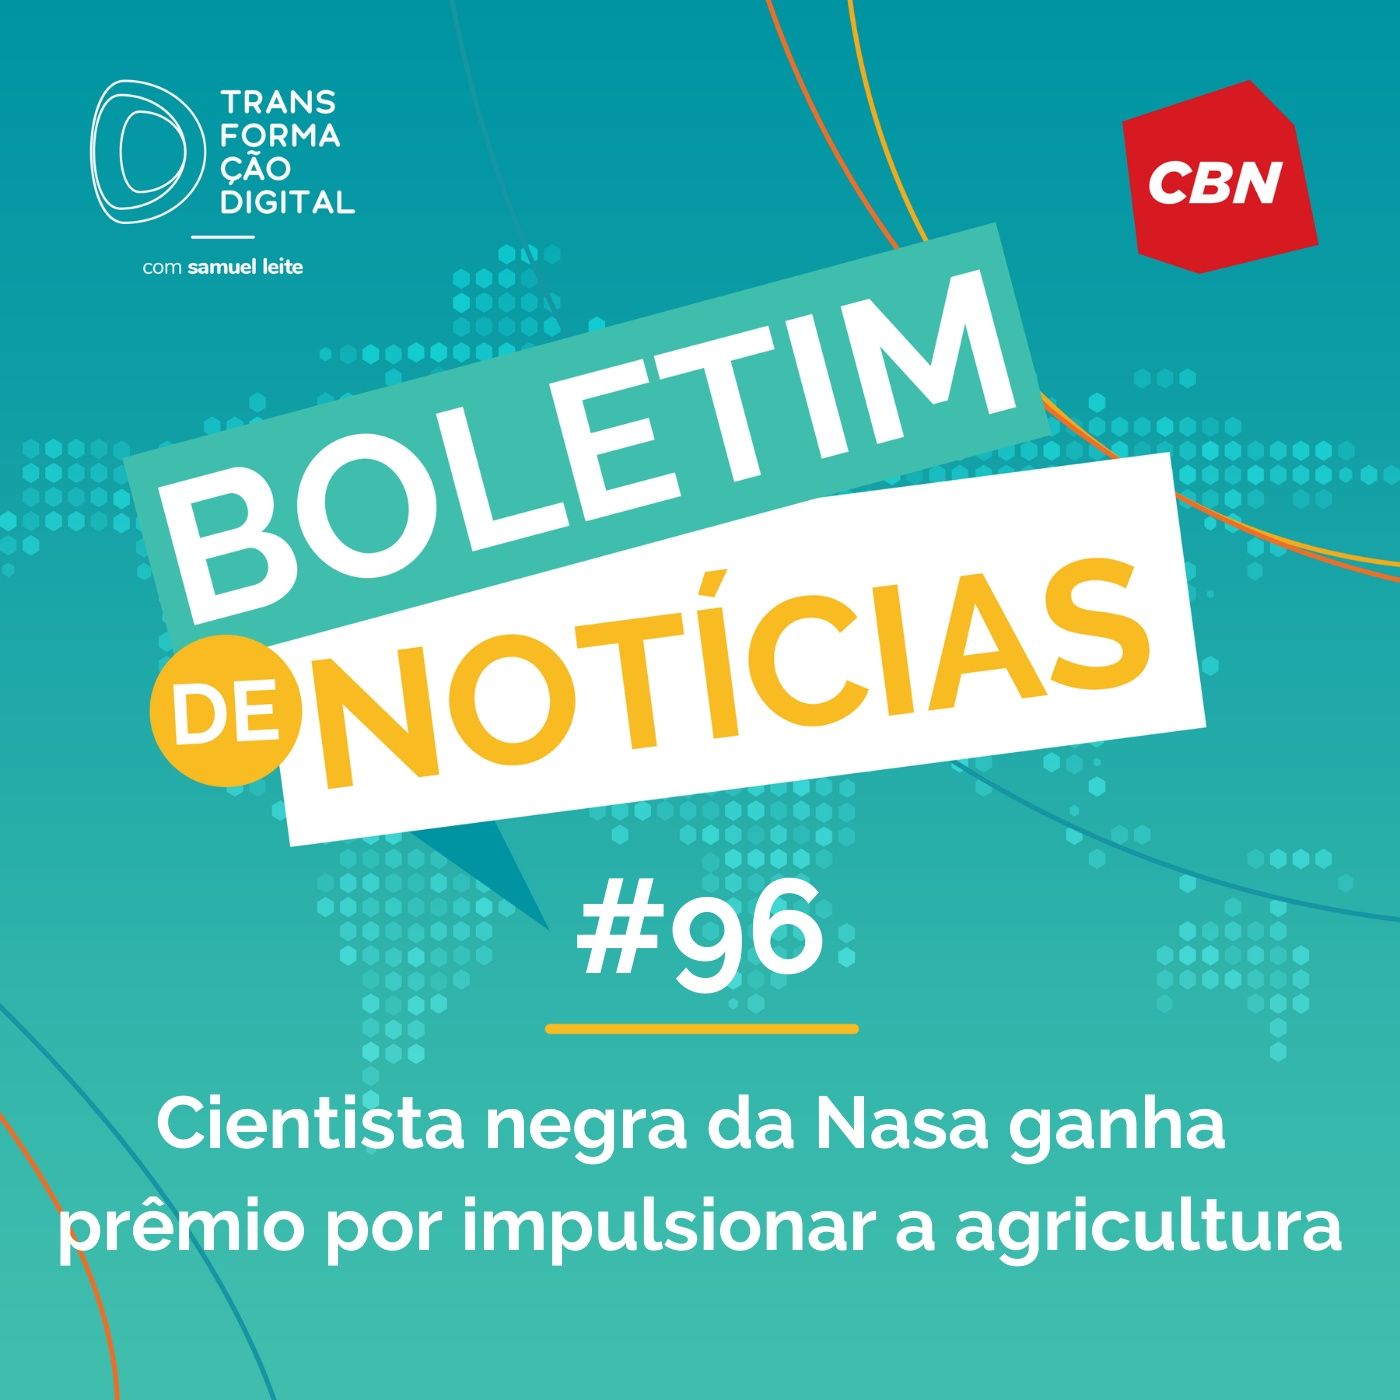 Transformação Digital CBN - Boletim de Notícias #96 - Cientista negra da Nasa ganha prêmio por impulsionar a agricultura